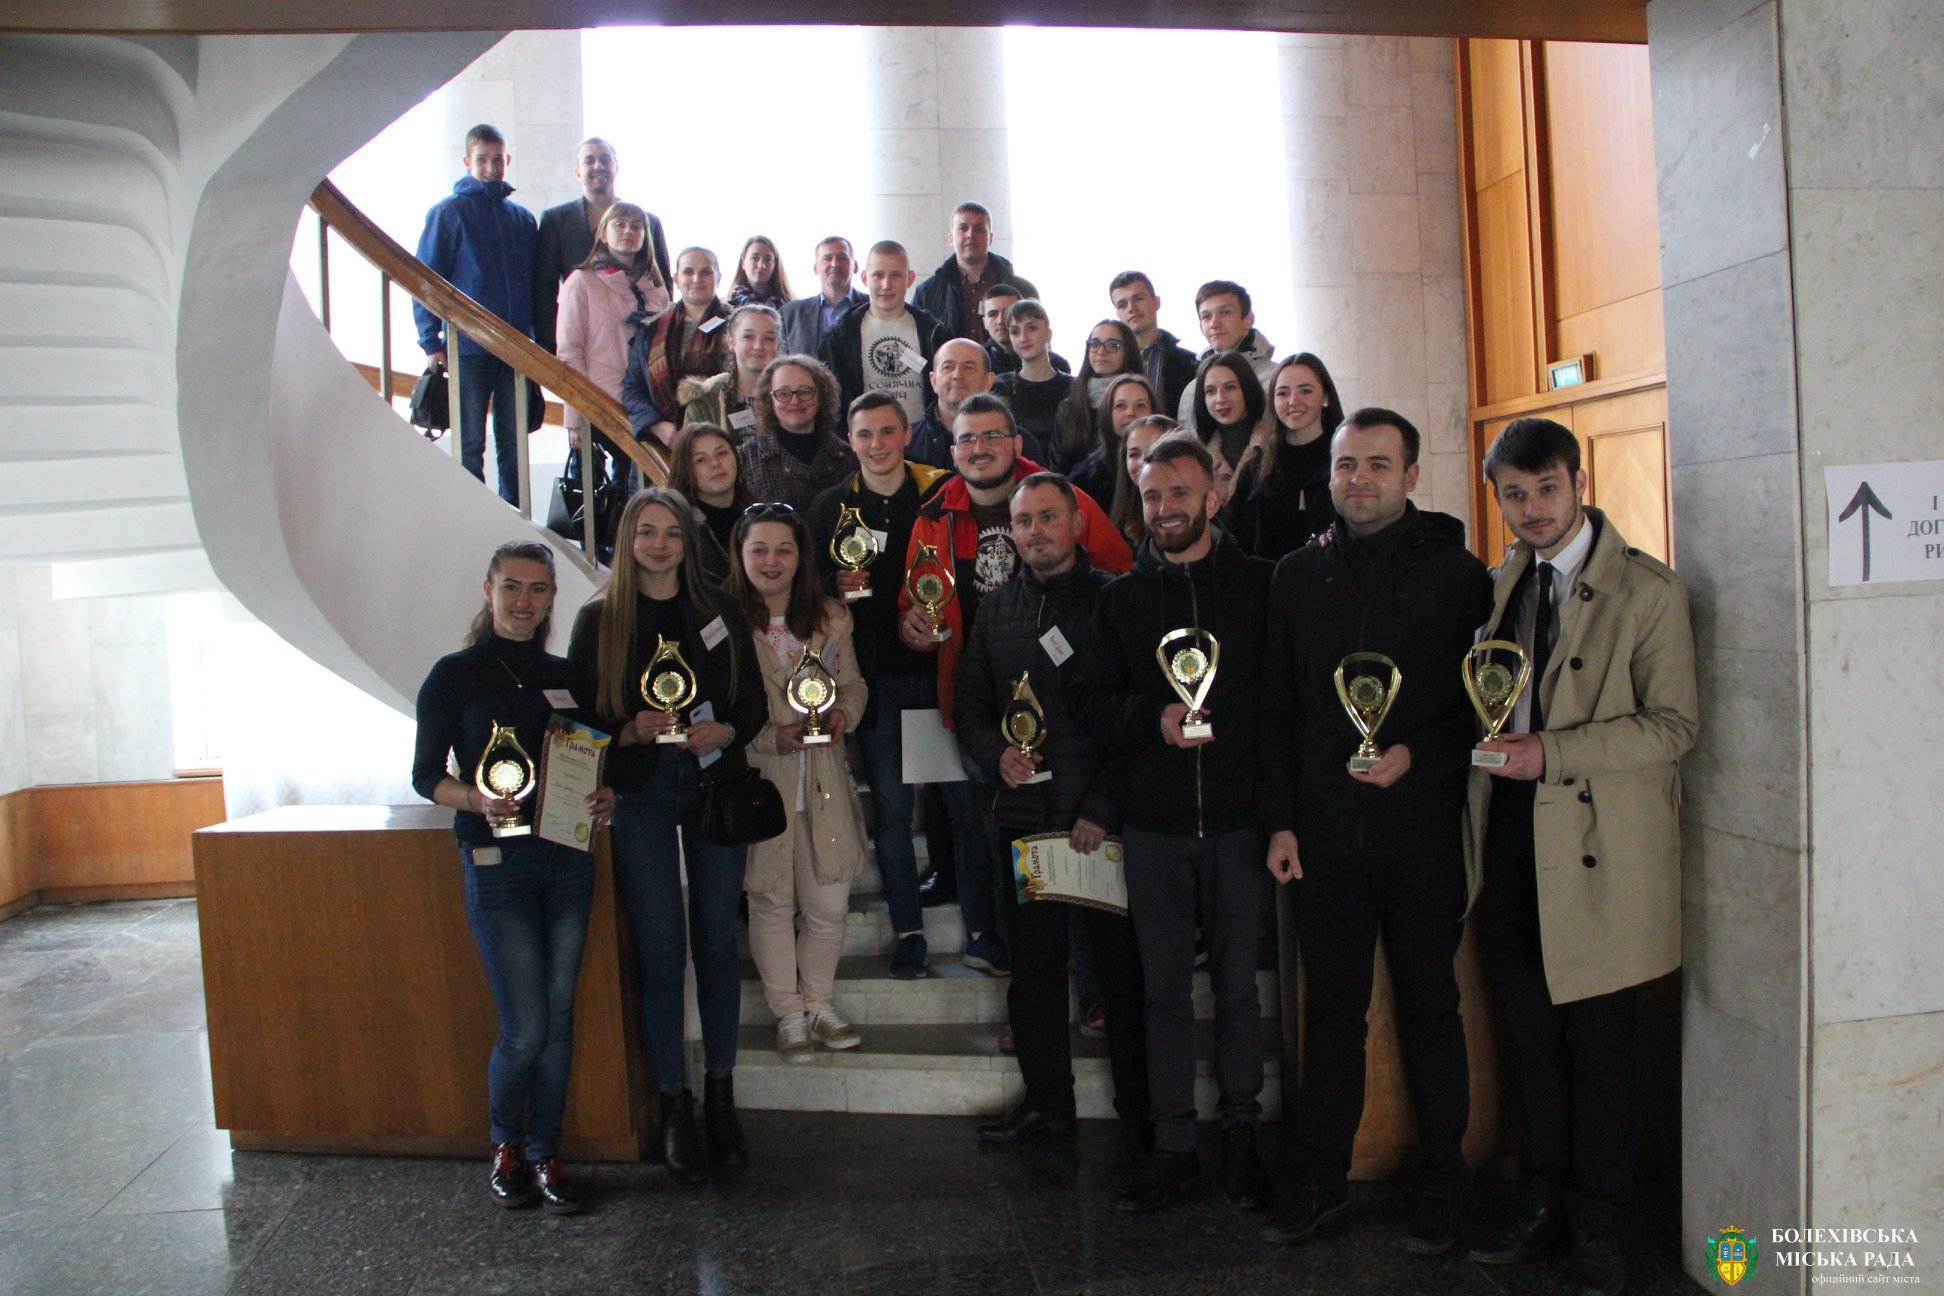 Визначено найрозумніших: у Болехові відбувся інтелектуальний турнір серед молоді «Битва геніїв»